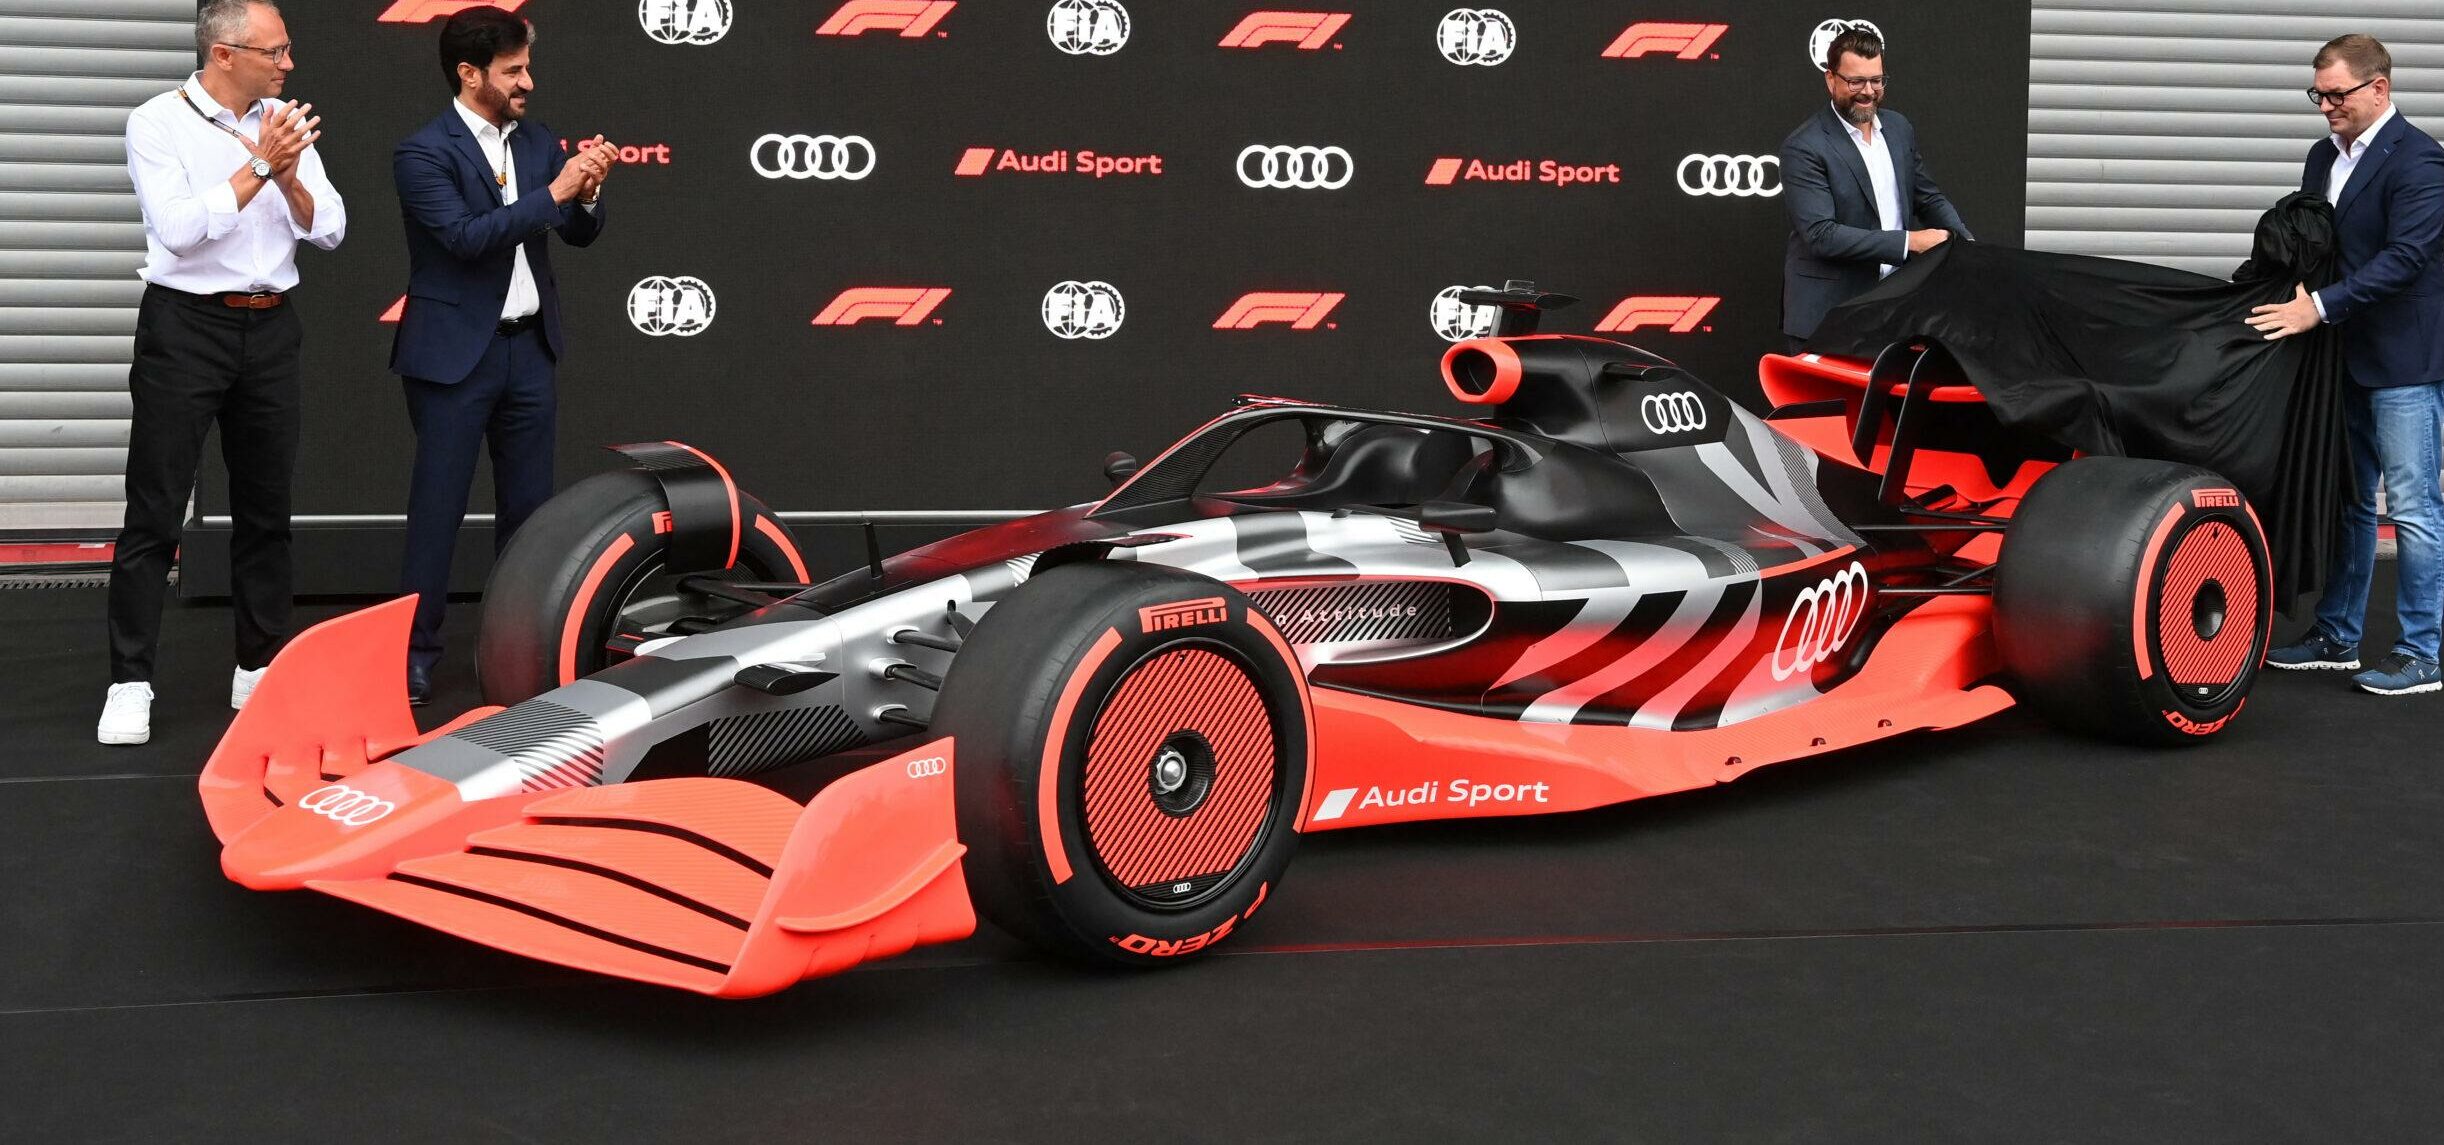 Audi wird andere Kategorien aufgeben, um sich ausschließlich auf F1 zu konzentrieren – Formel-1-Nachrichten